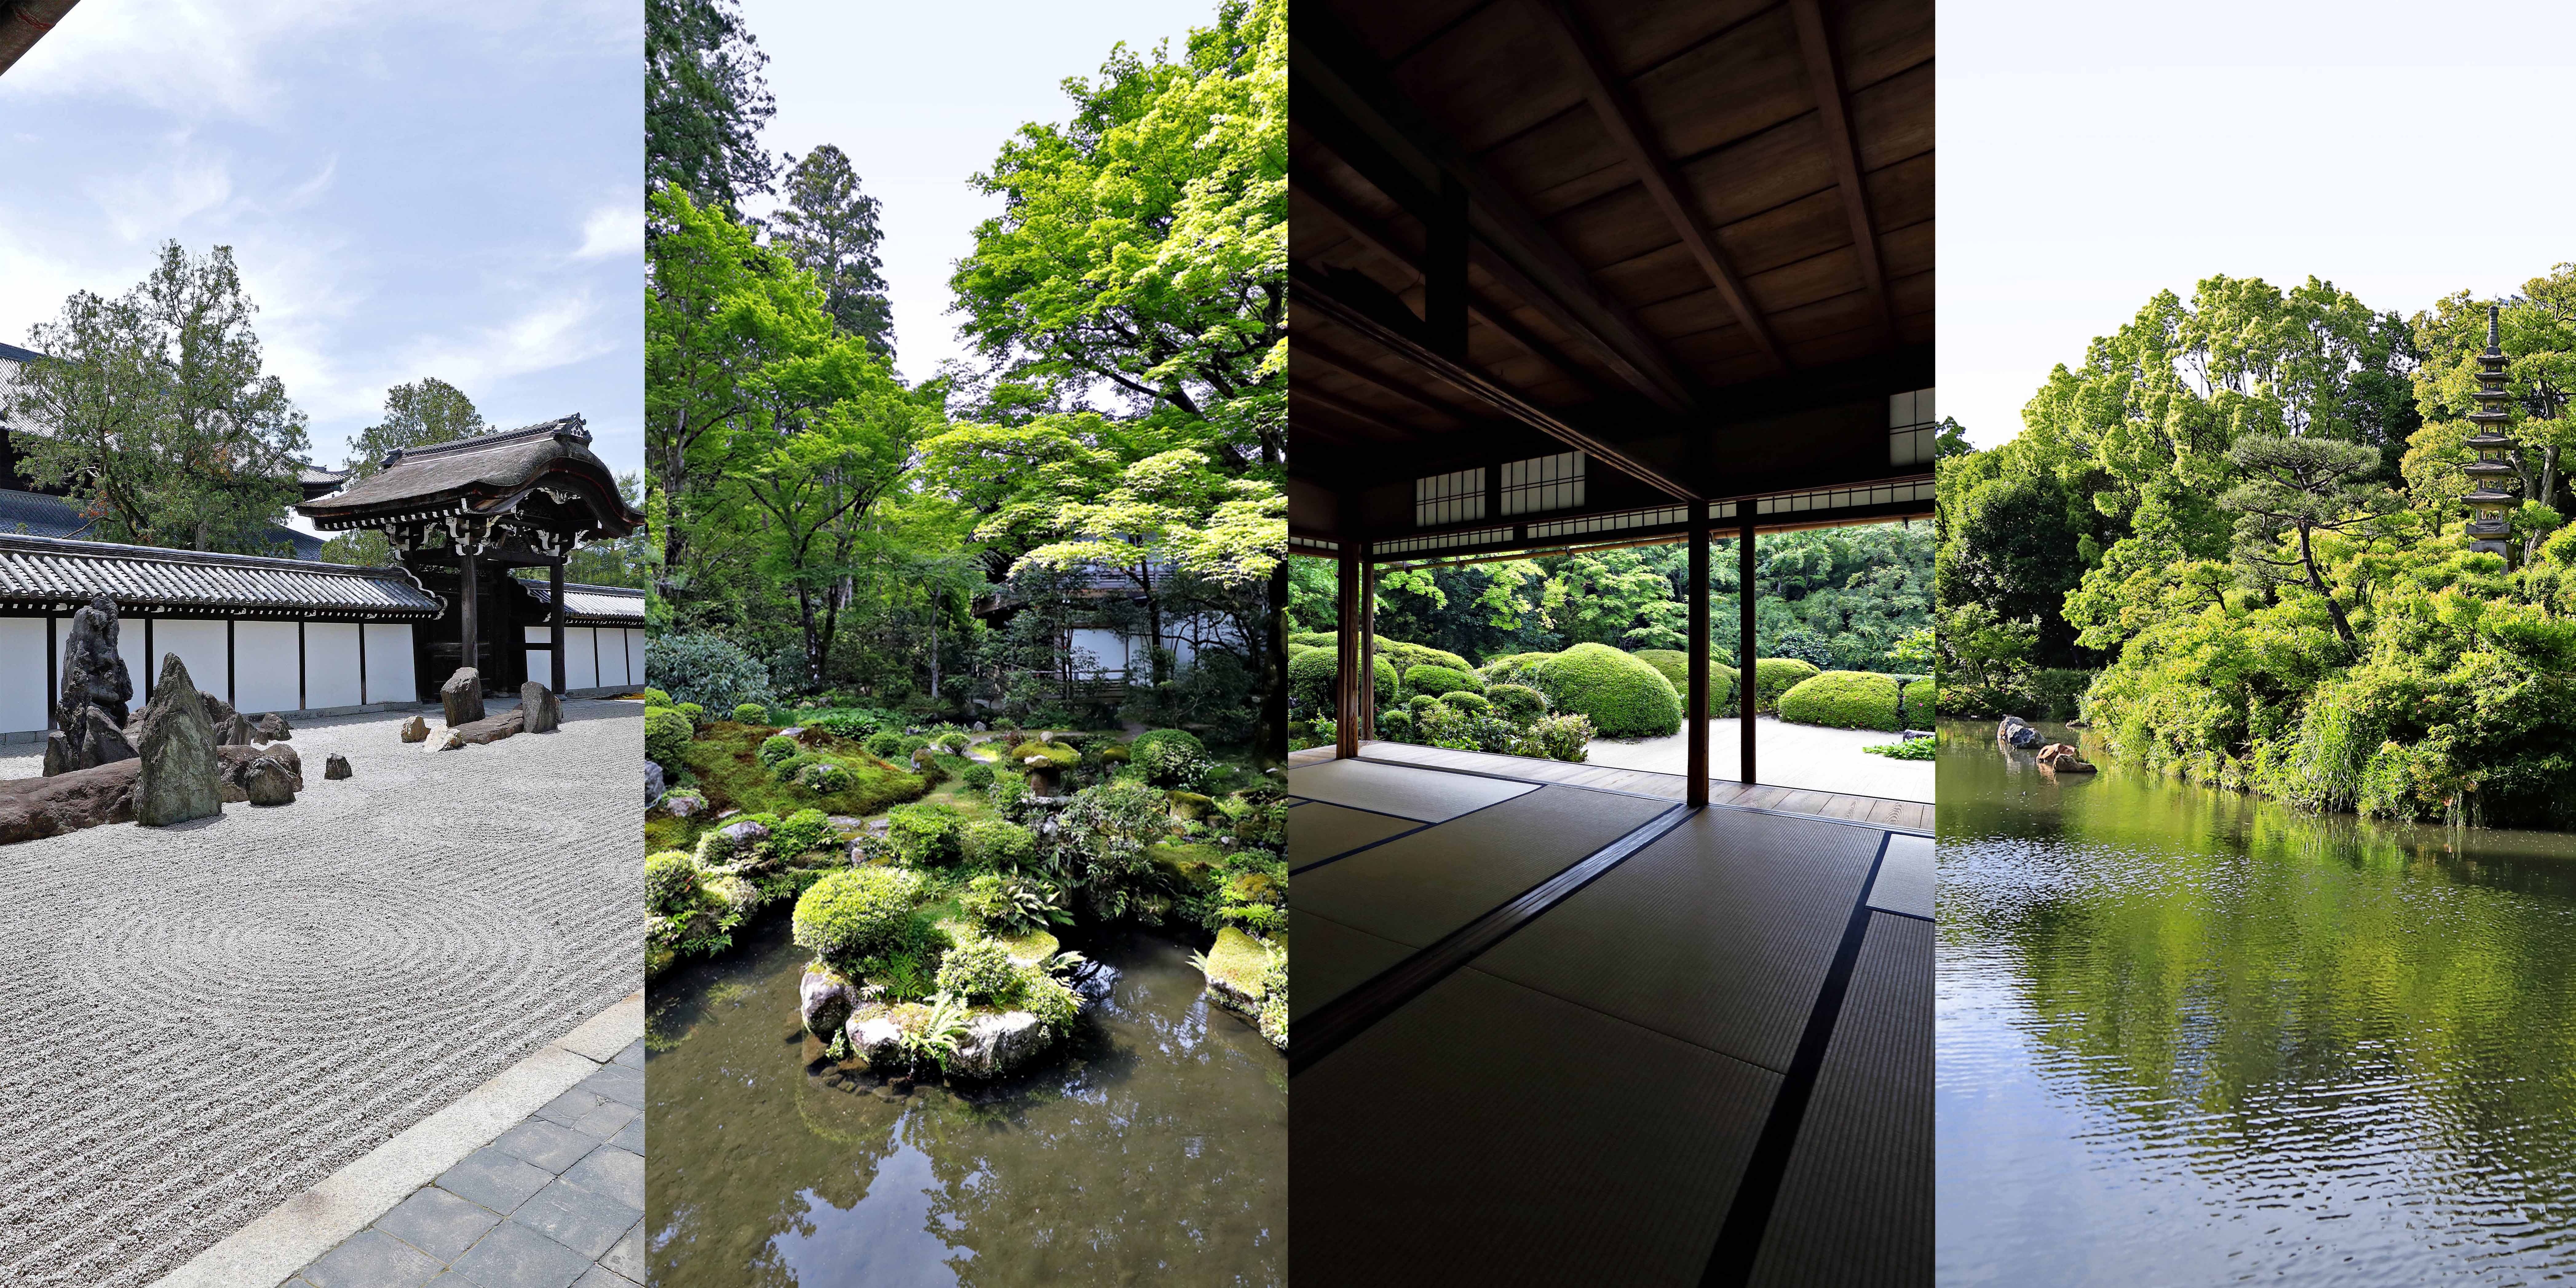 静寂を求めて デジタルデトックスできる京都の名庭